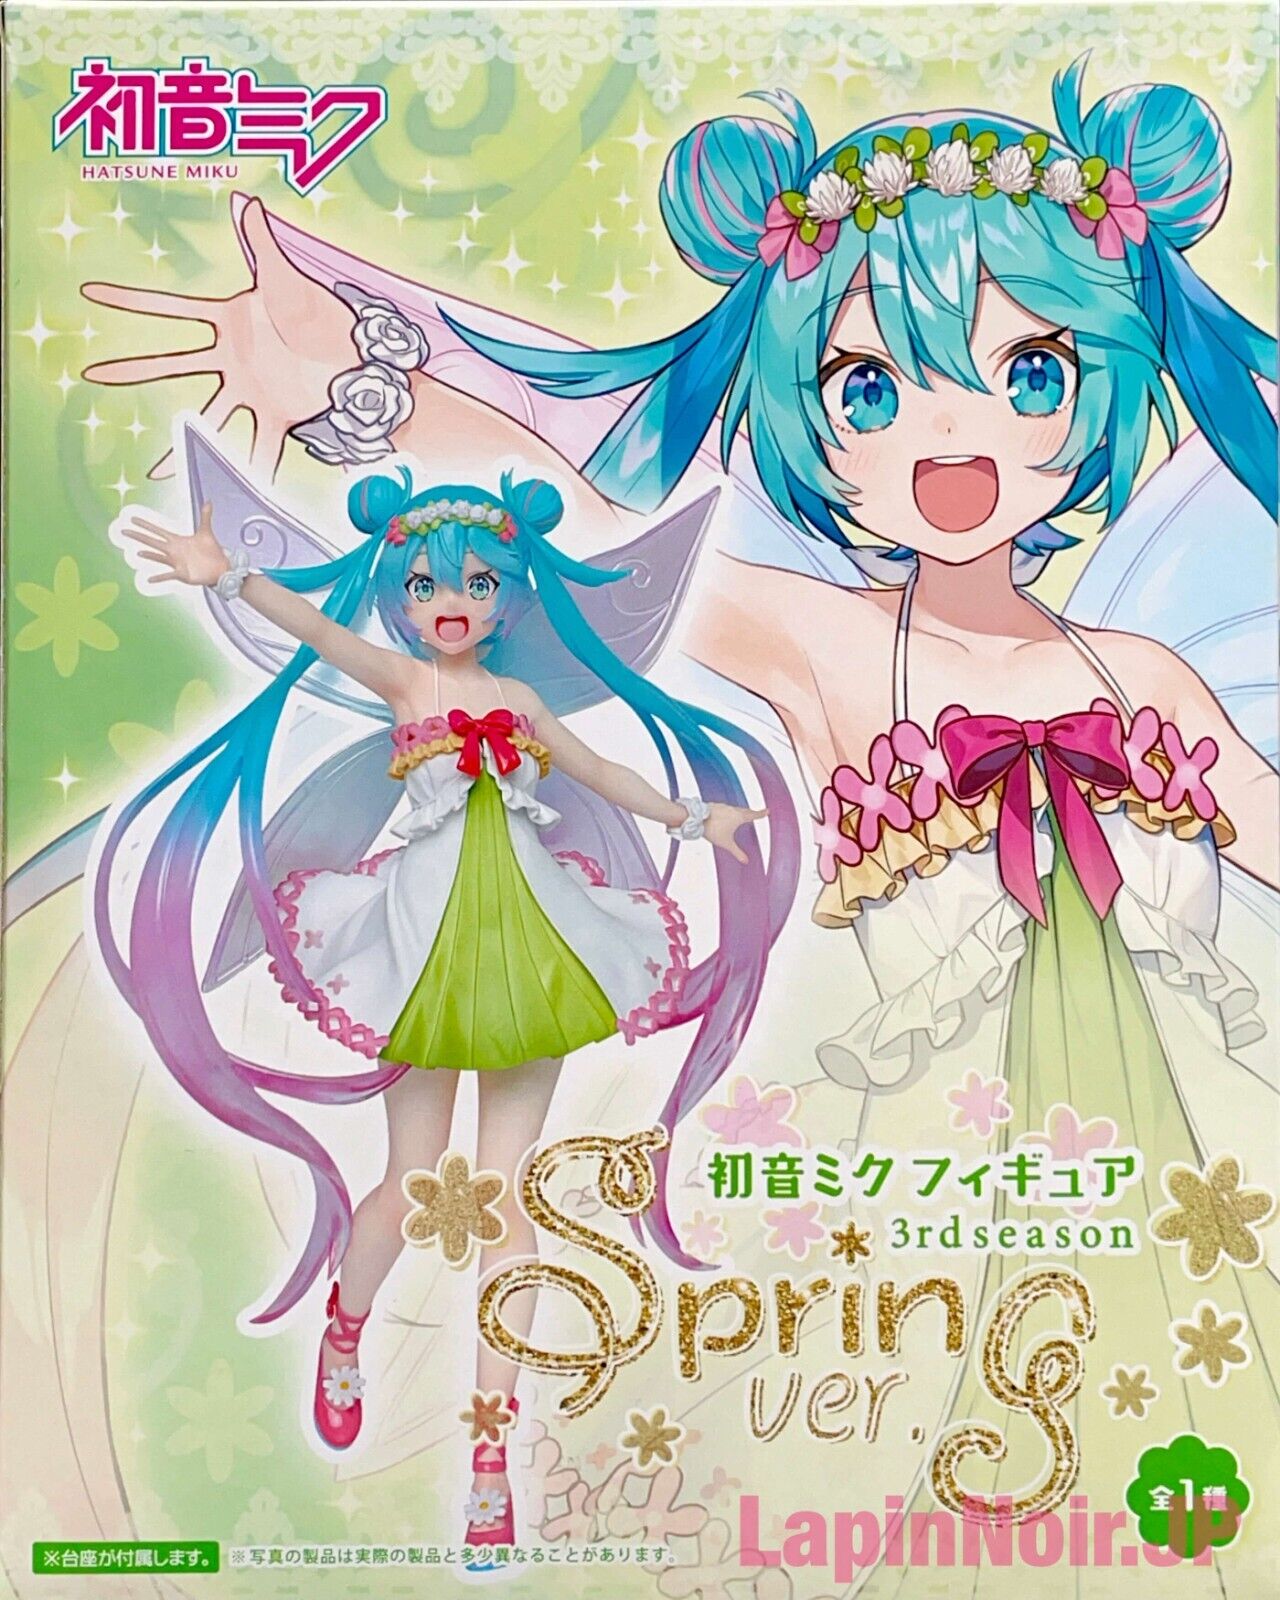 Vocaloid - Hatsune Miku - 3rd season Spring Ver. (BOXLESS)